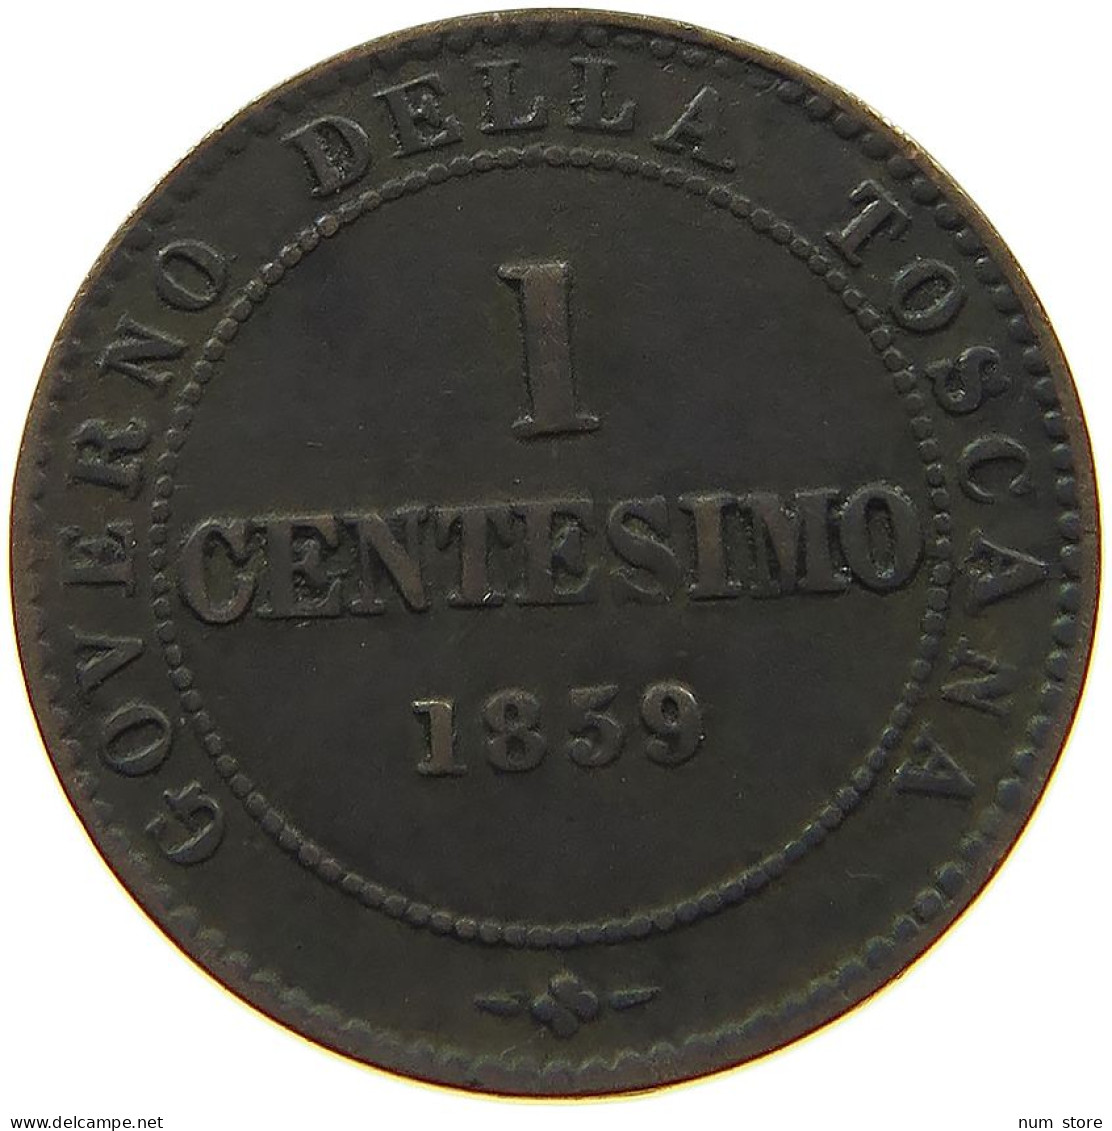 ITALY STATES TUSCANY CENTESIMO 1859  #t146 0463 - Toskana